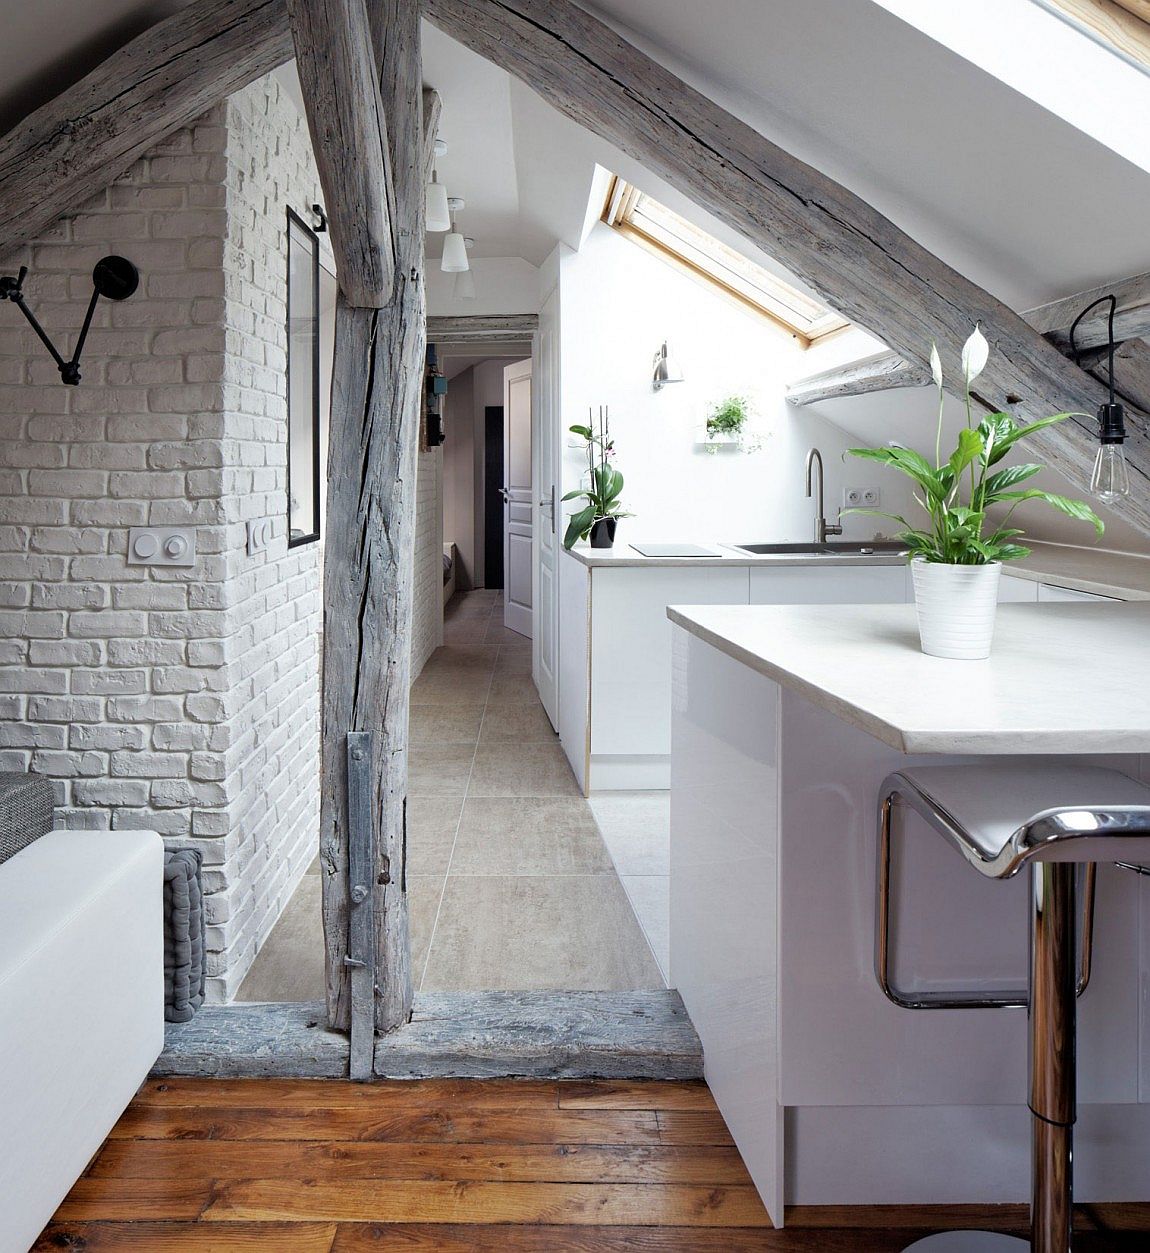 Rustic contemporary apartment renovation in Paris